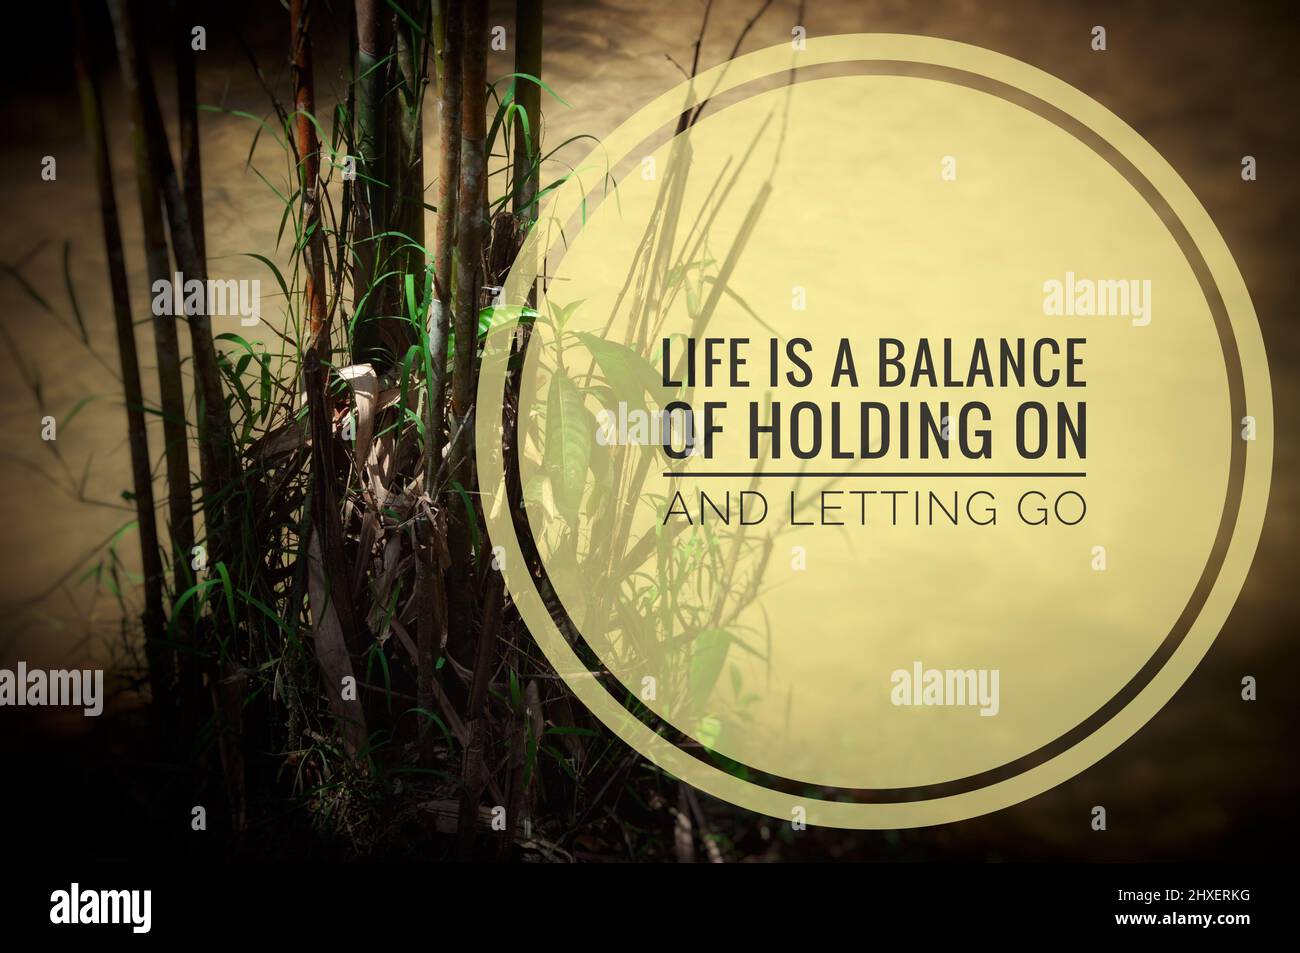 Motivationszitat - Leben ein Gleichgewicht zwischen Festhalten und Loslassen. Mit Bambus und Wasser Hintergrund. Motivationskonzept Stockfoto